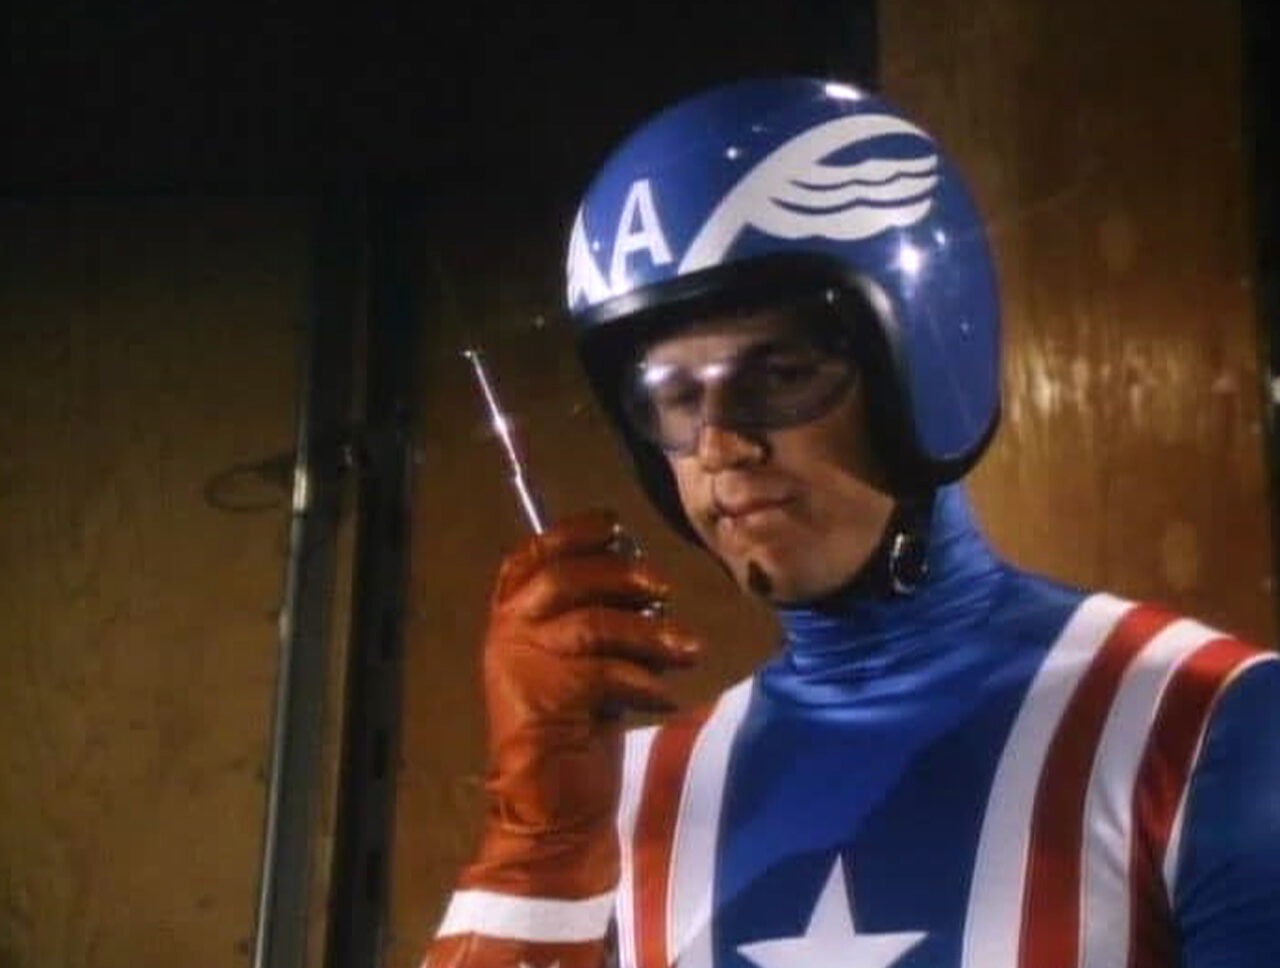 Reb Brown jako Kapitan Ameryka w filmie z 1979 roku. Aktor w charakterystycznym niebiesko czerwonym kostiumie trzymający walkie talkie